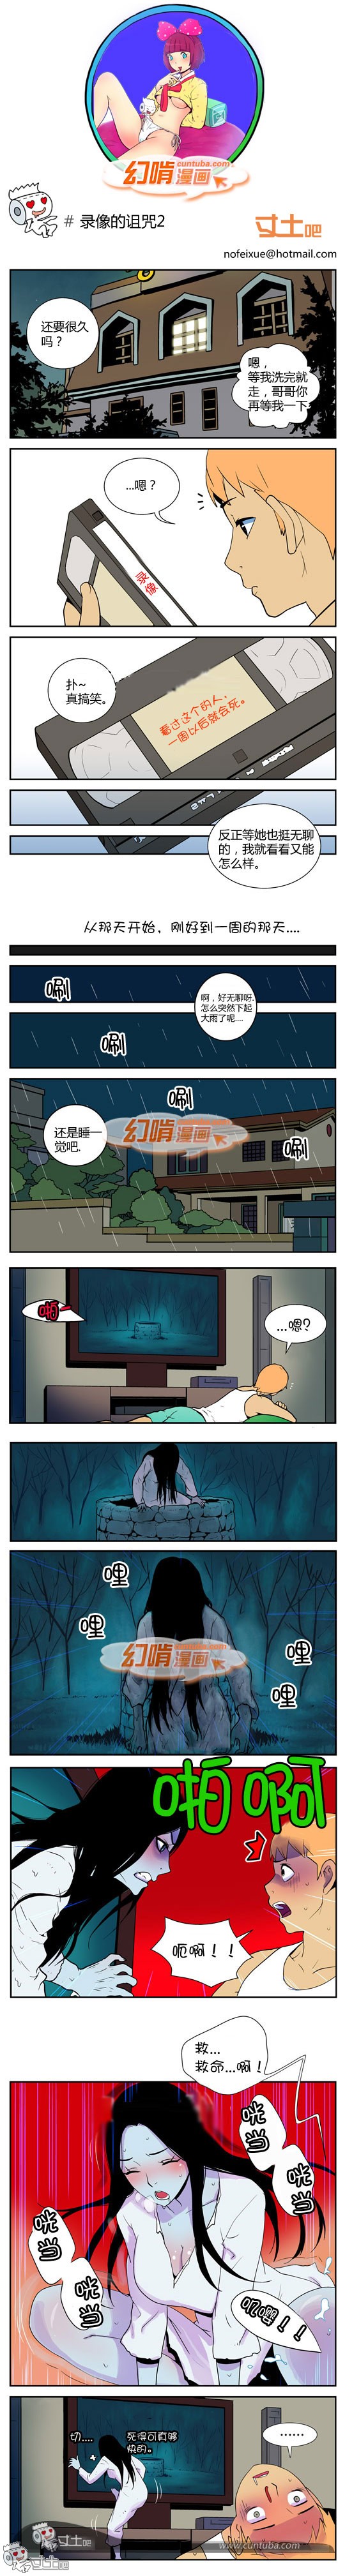 幻啃漫画录像的诅咒2